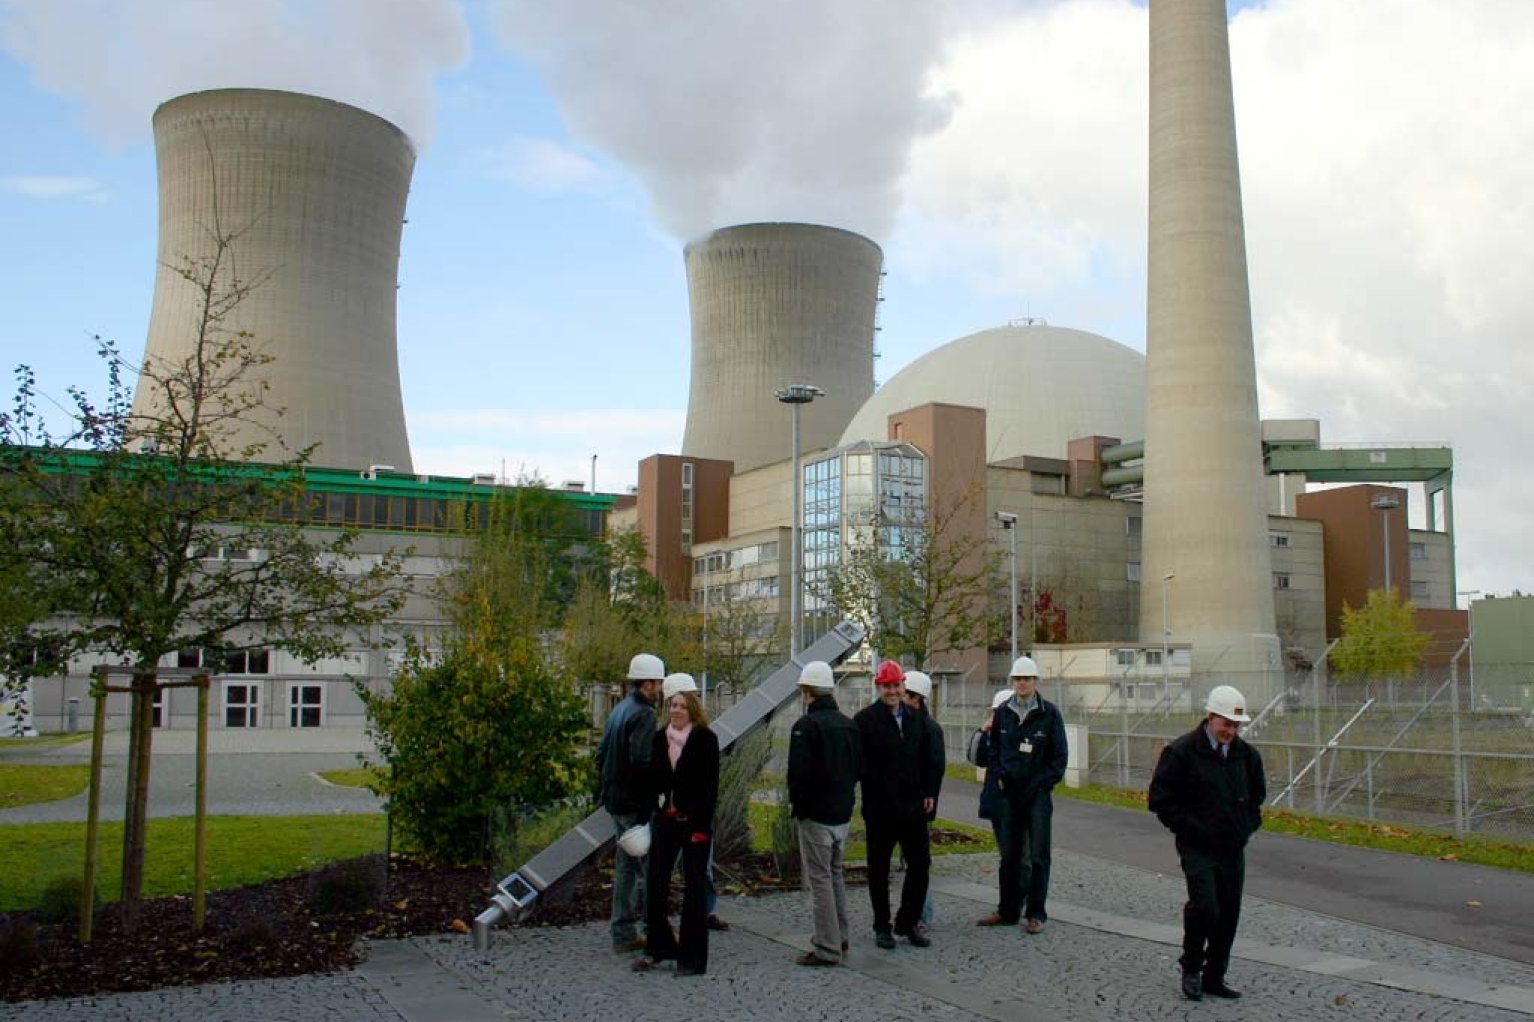 Утечка фрг. АЭС Германии 2022. Ядерная Энергетика Германии атомные электростанции Германии. Атомная электростанция Графенрайнфельд. Harz Германия атомная электростанция.